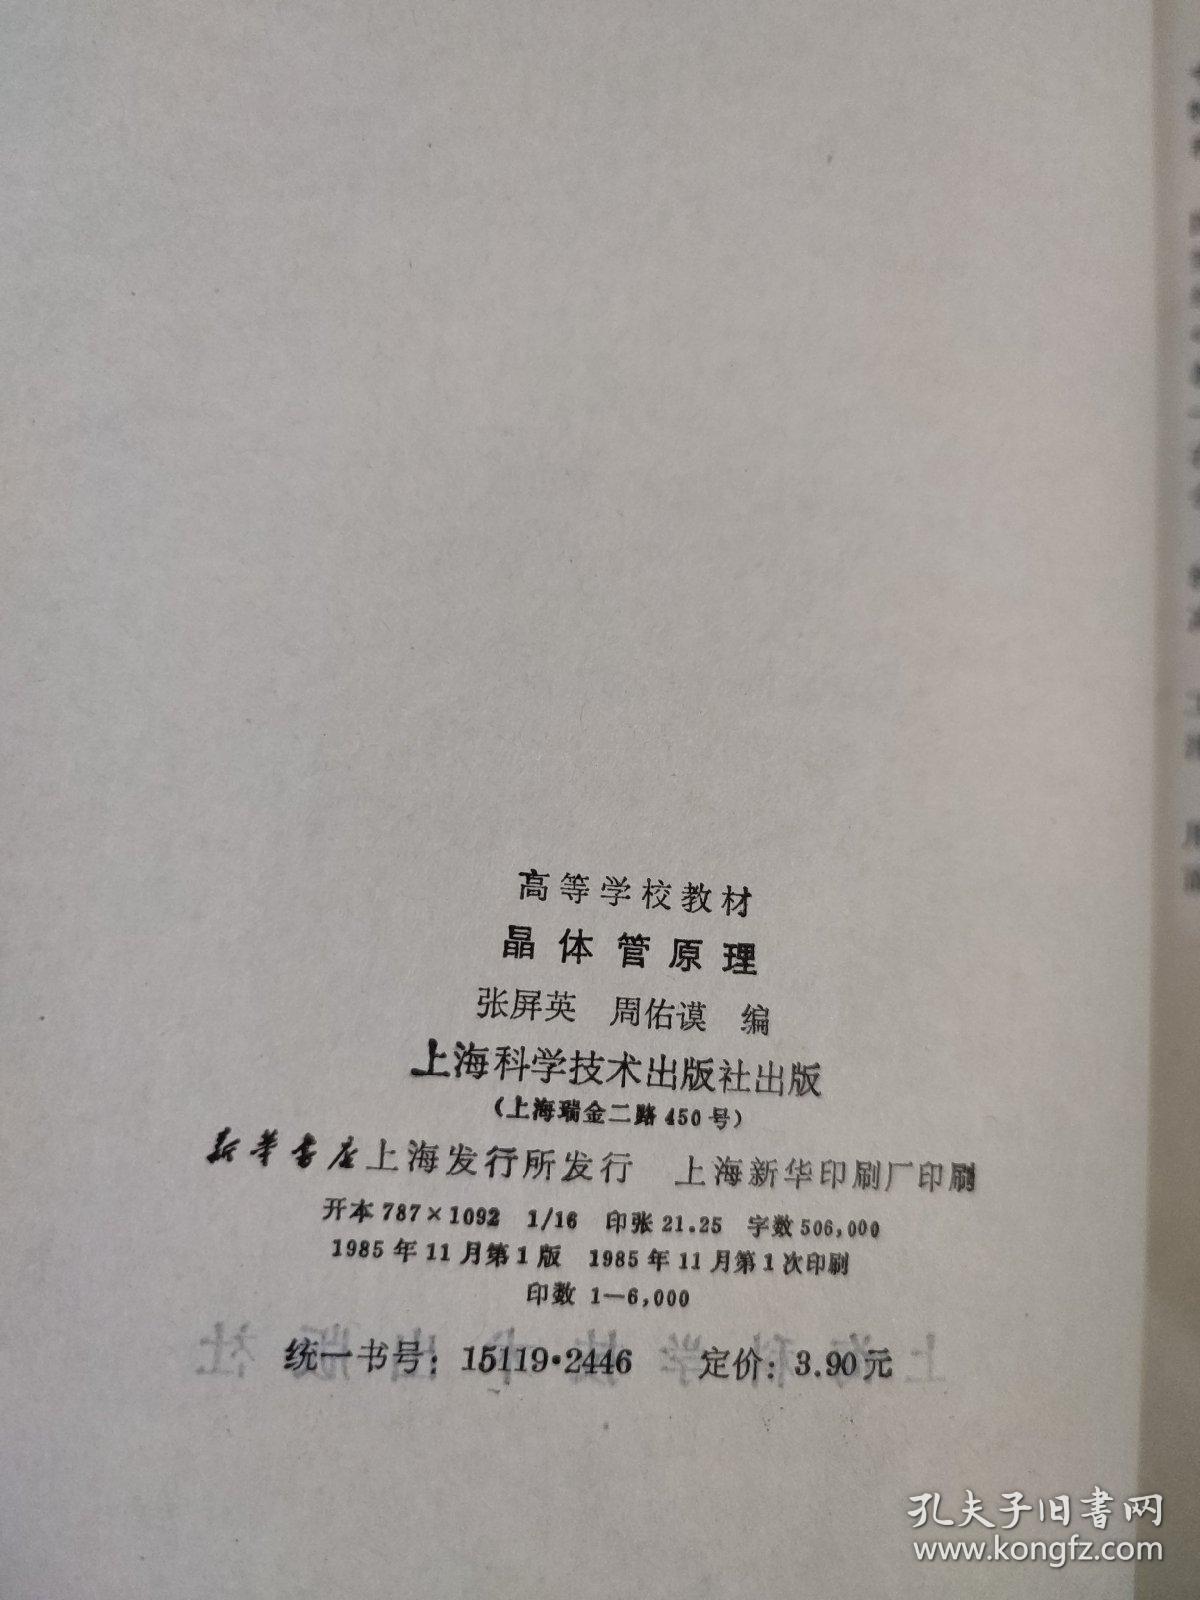 晶体管原理 上海科学技术出版